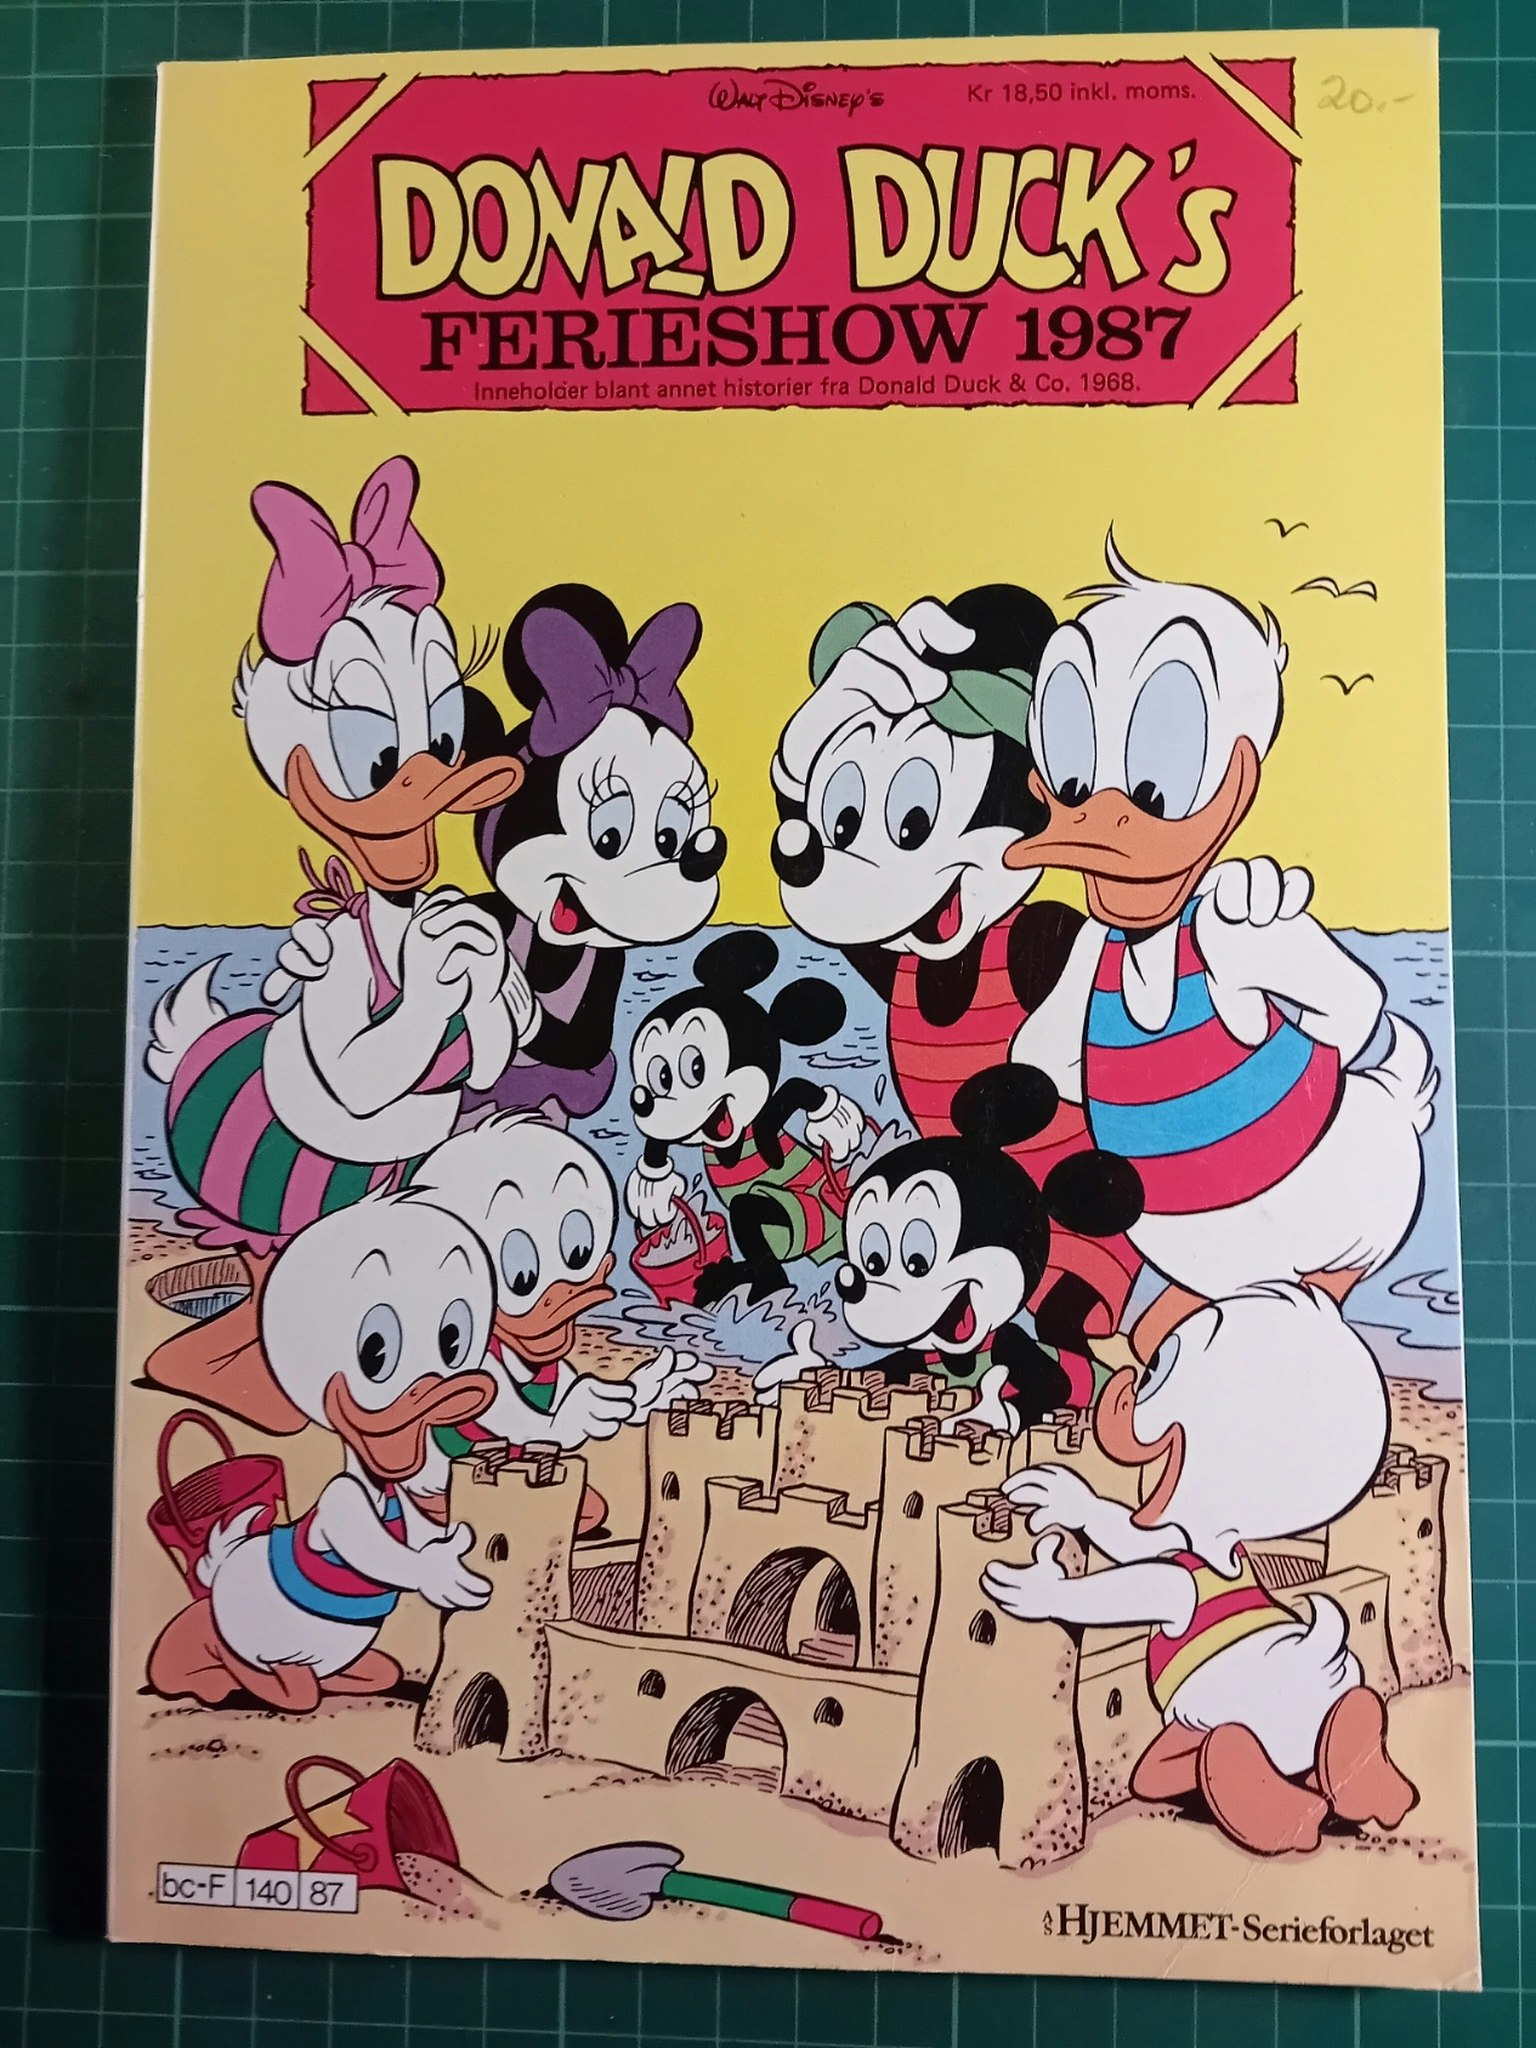 Donald Ducks 1987 Ferie show